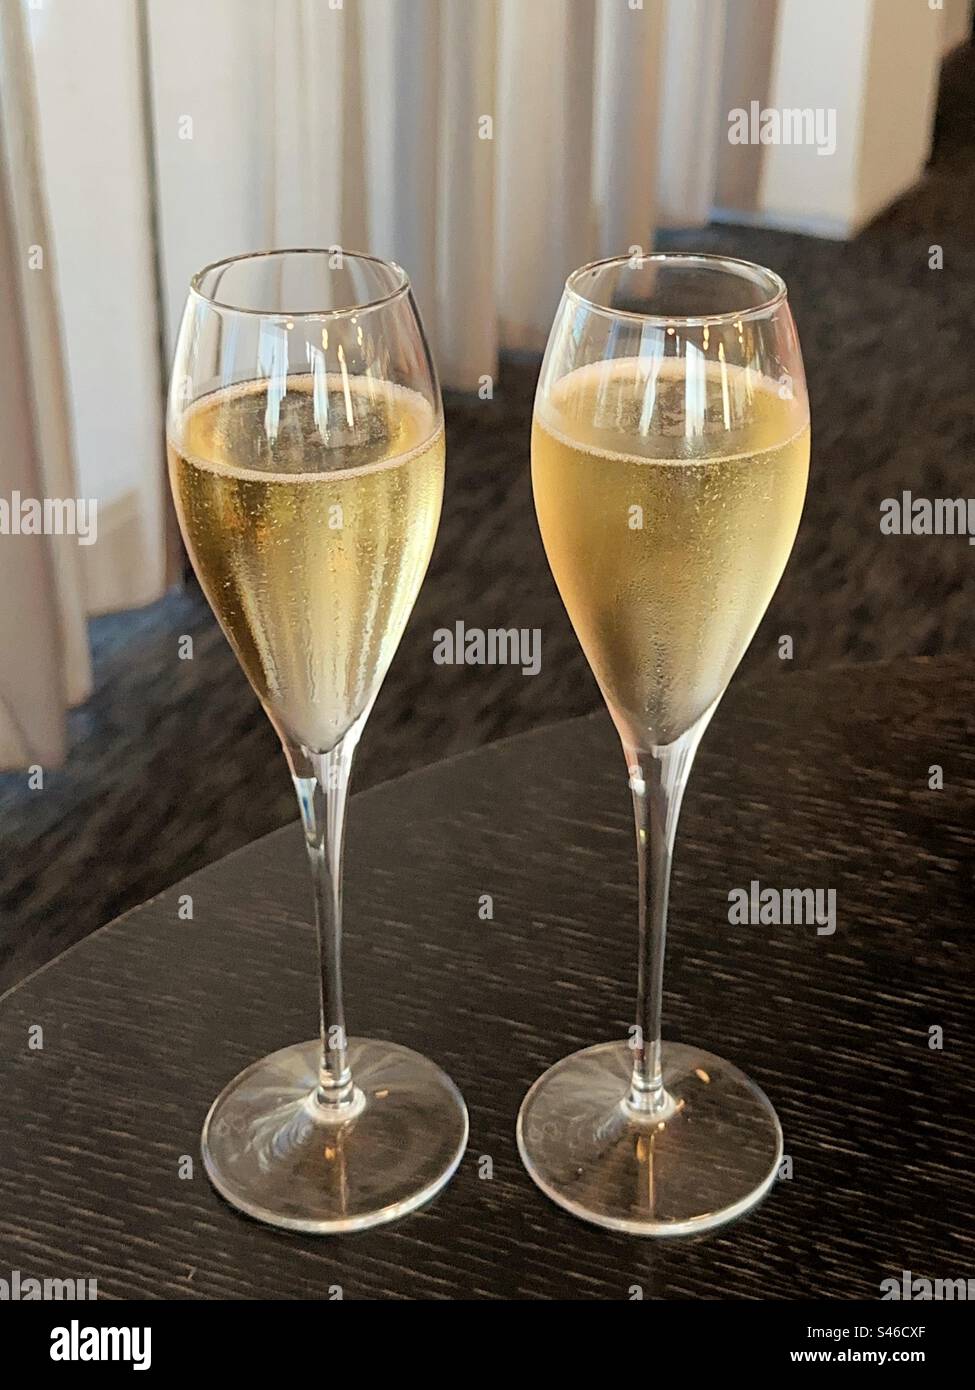 Deux flûtes de champagne sur une table dans le salon de l'hôtel. Personne. Banque D'Images